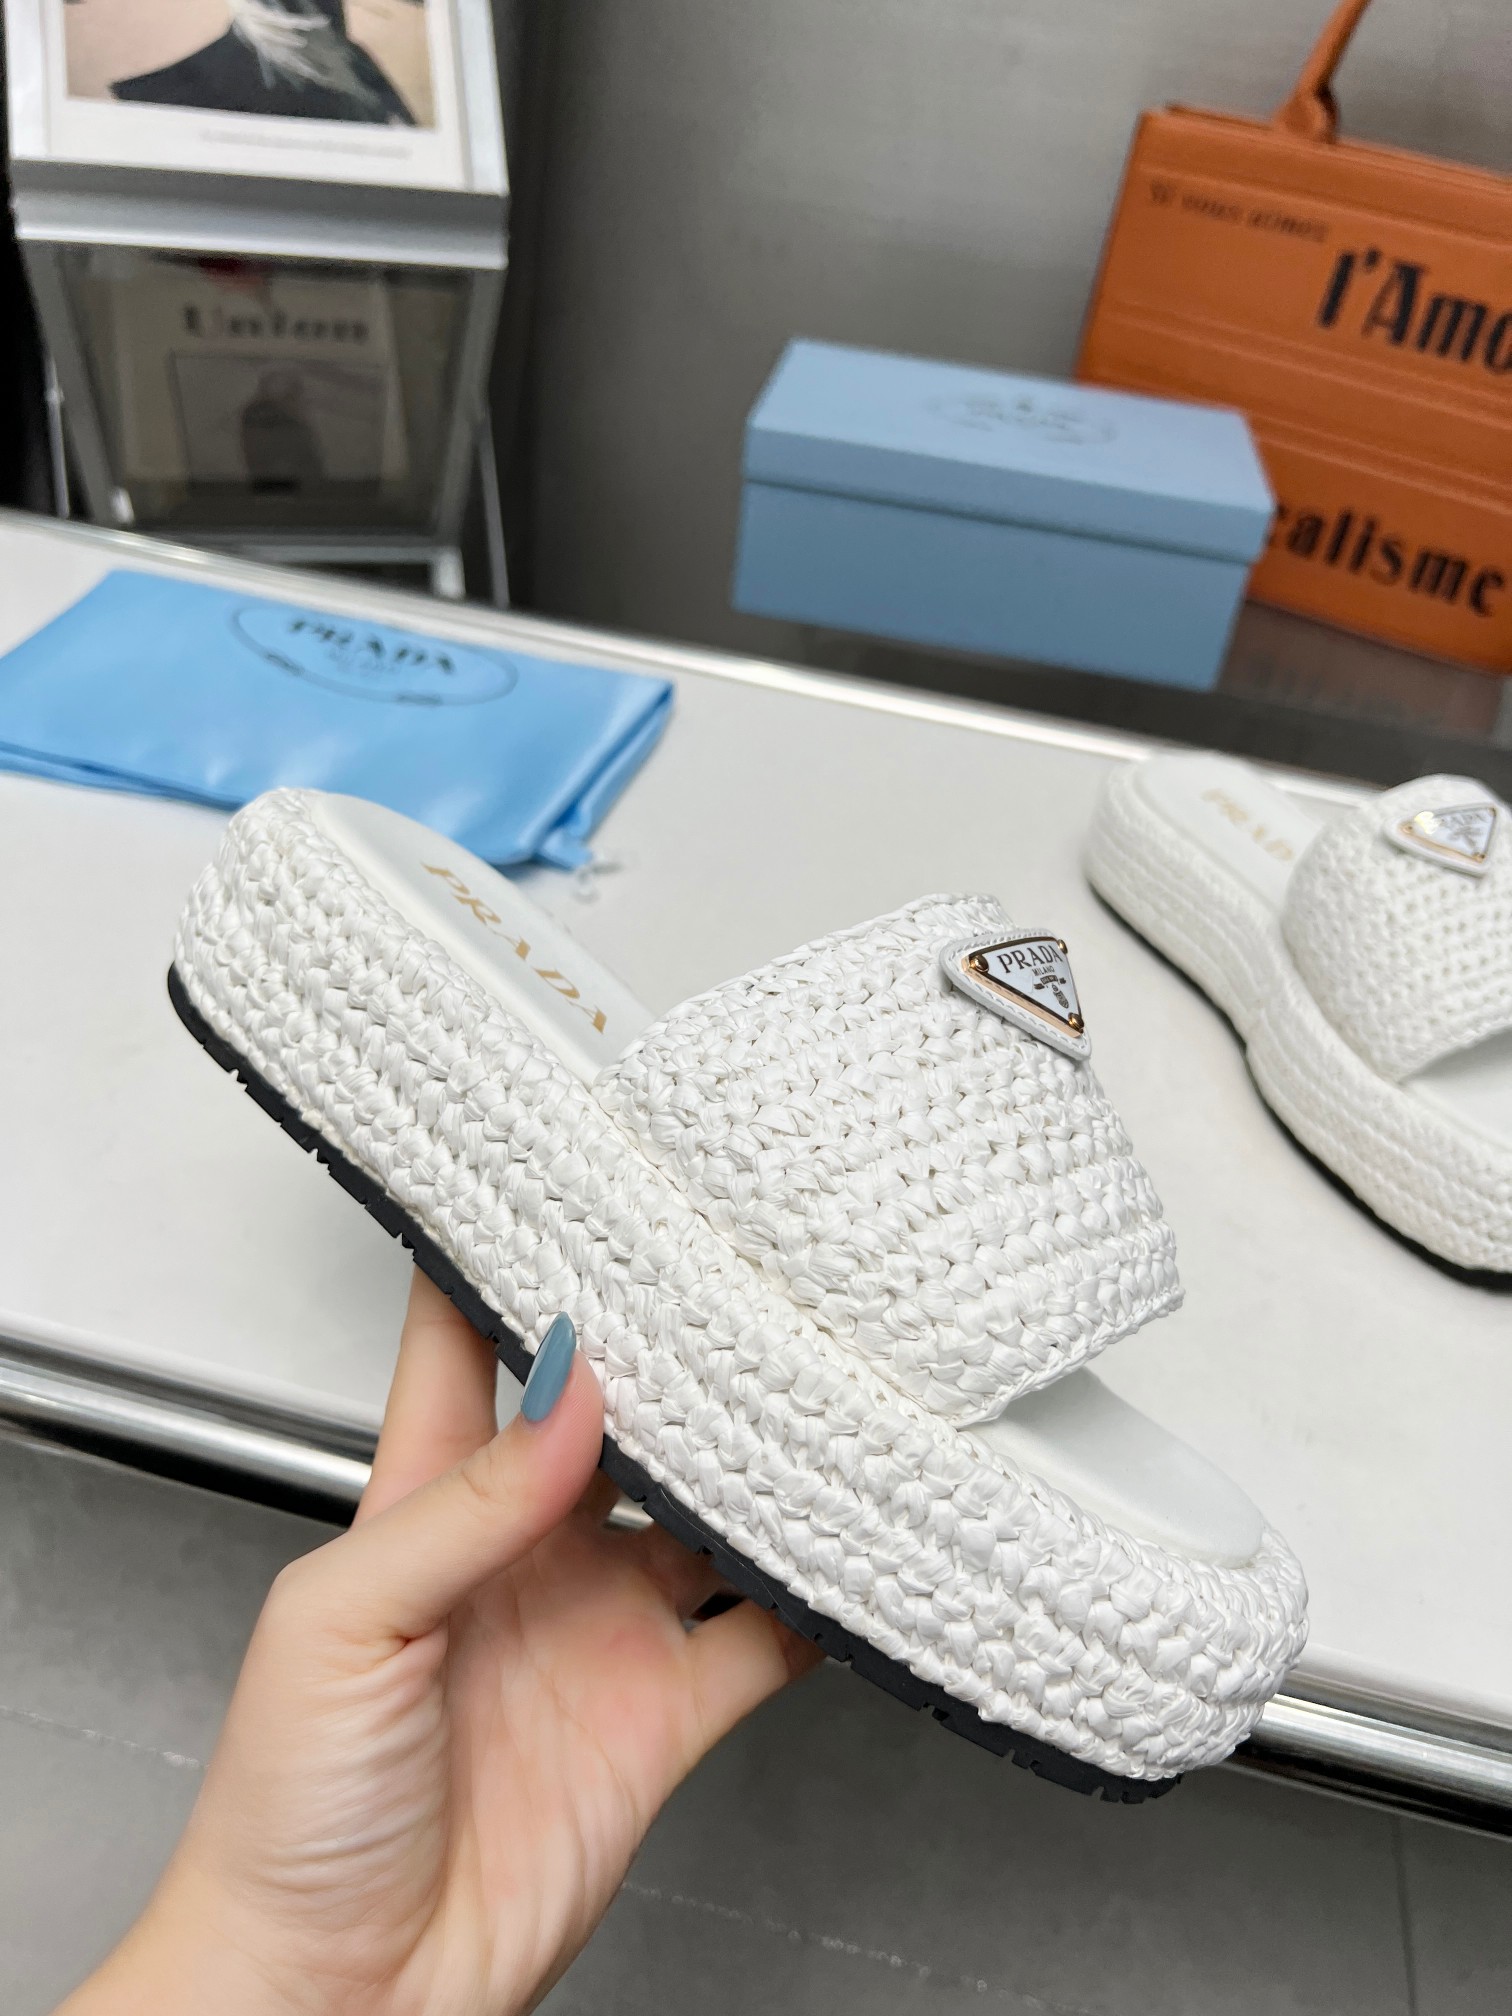 Prada Crochet flatform Slides For Women # 269118, cheap Prada Slippers, only $82!